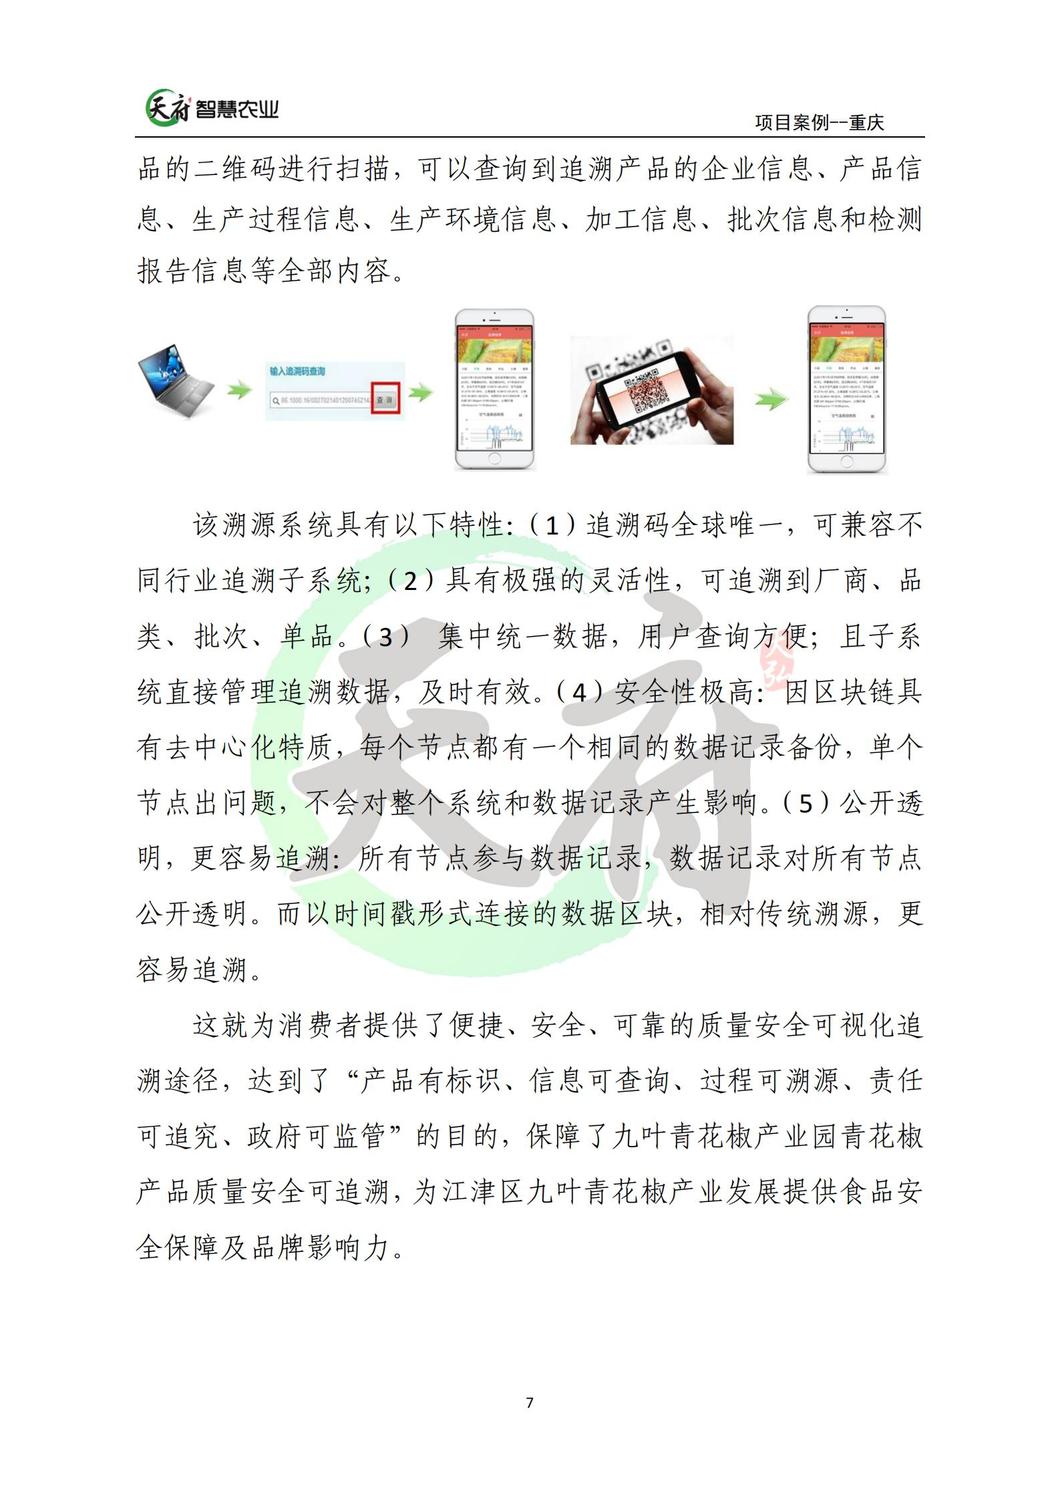 案例7：重庆数字农业花椒示范基地_07.jpg